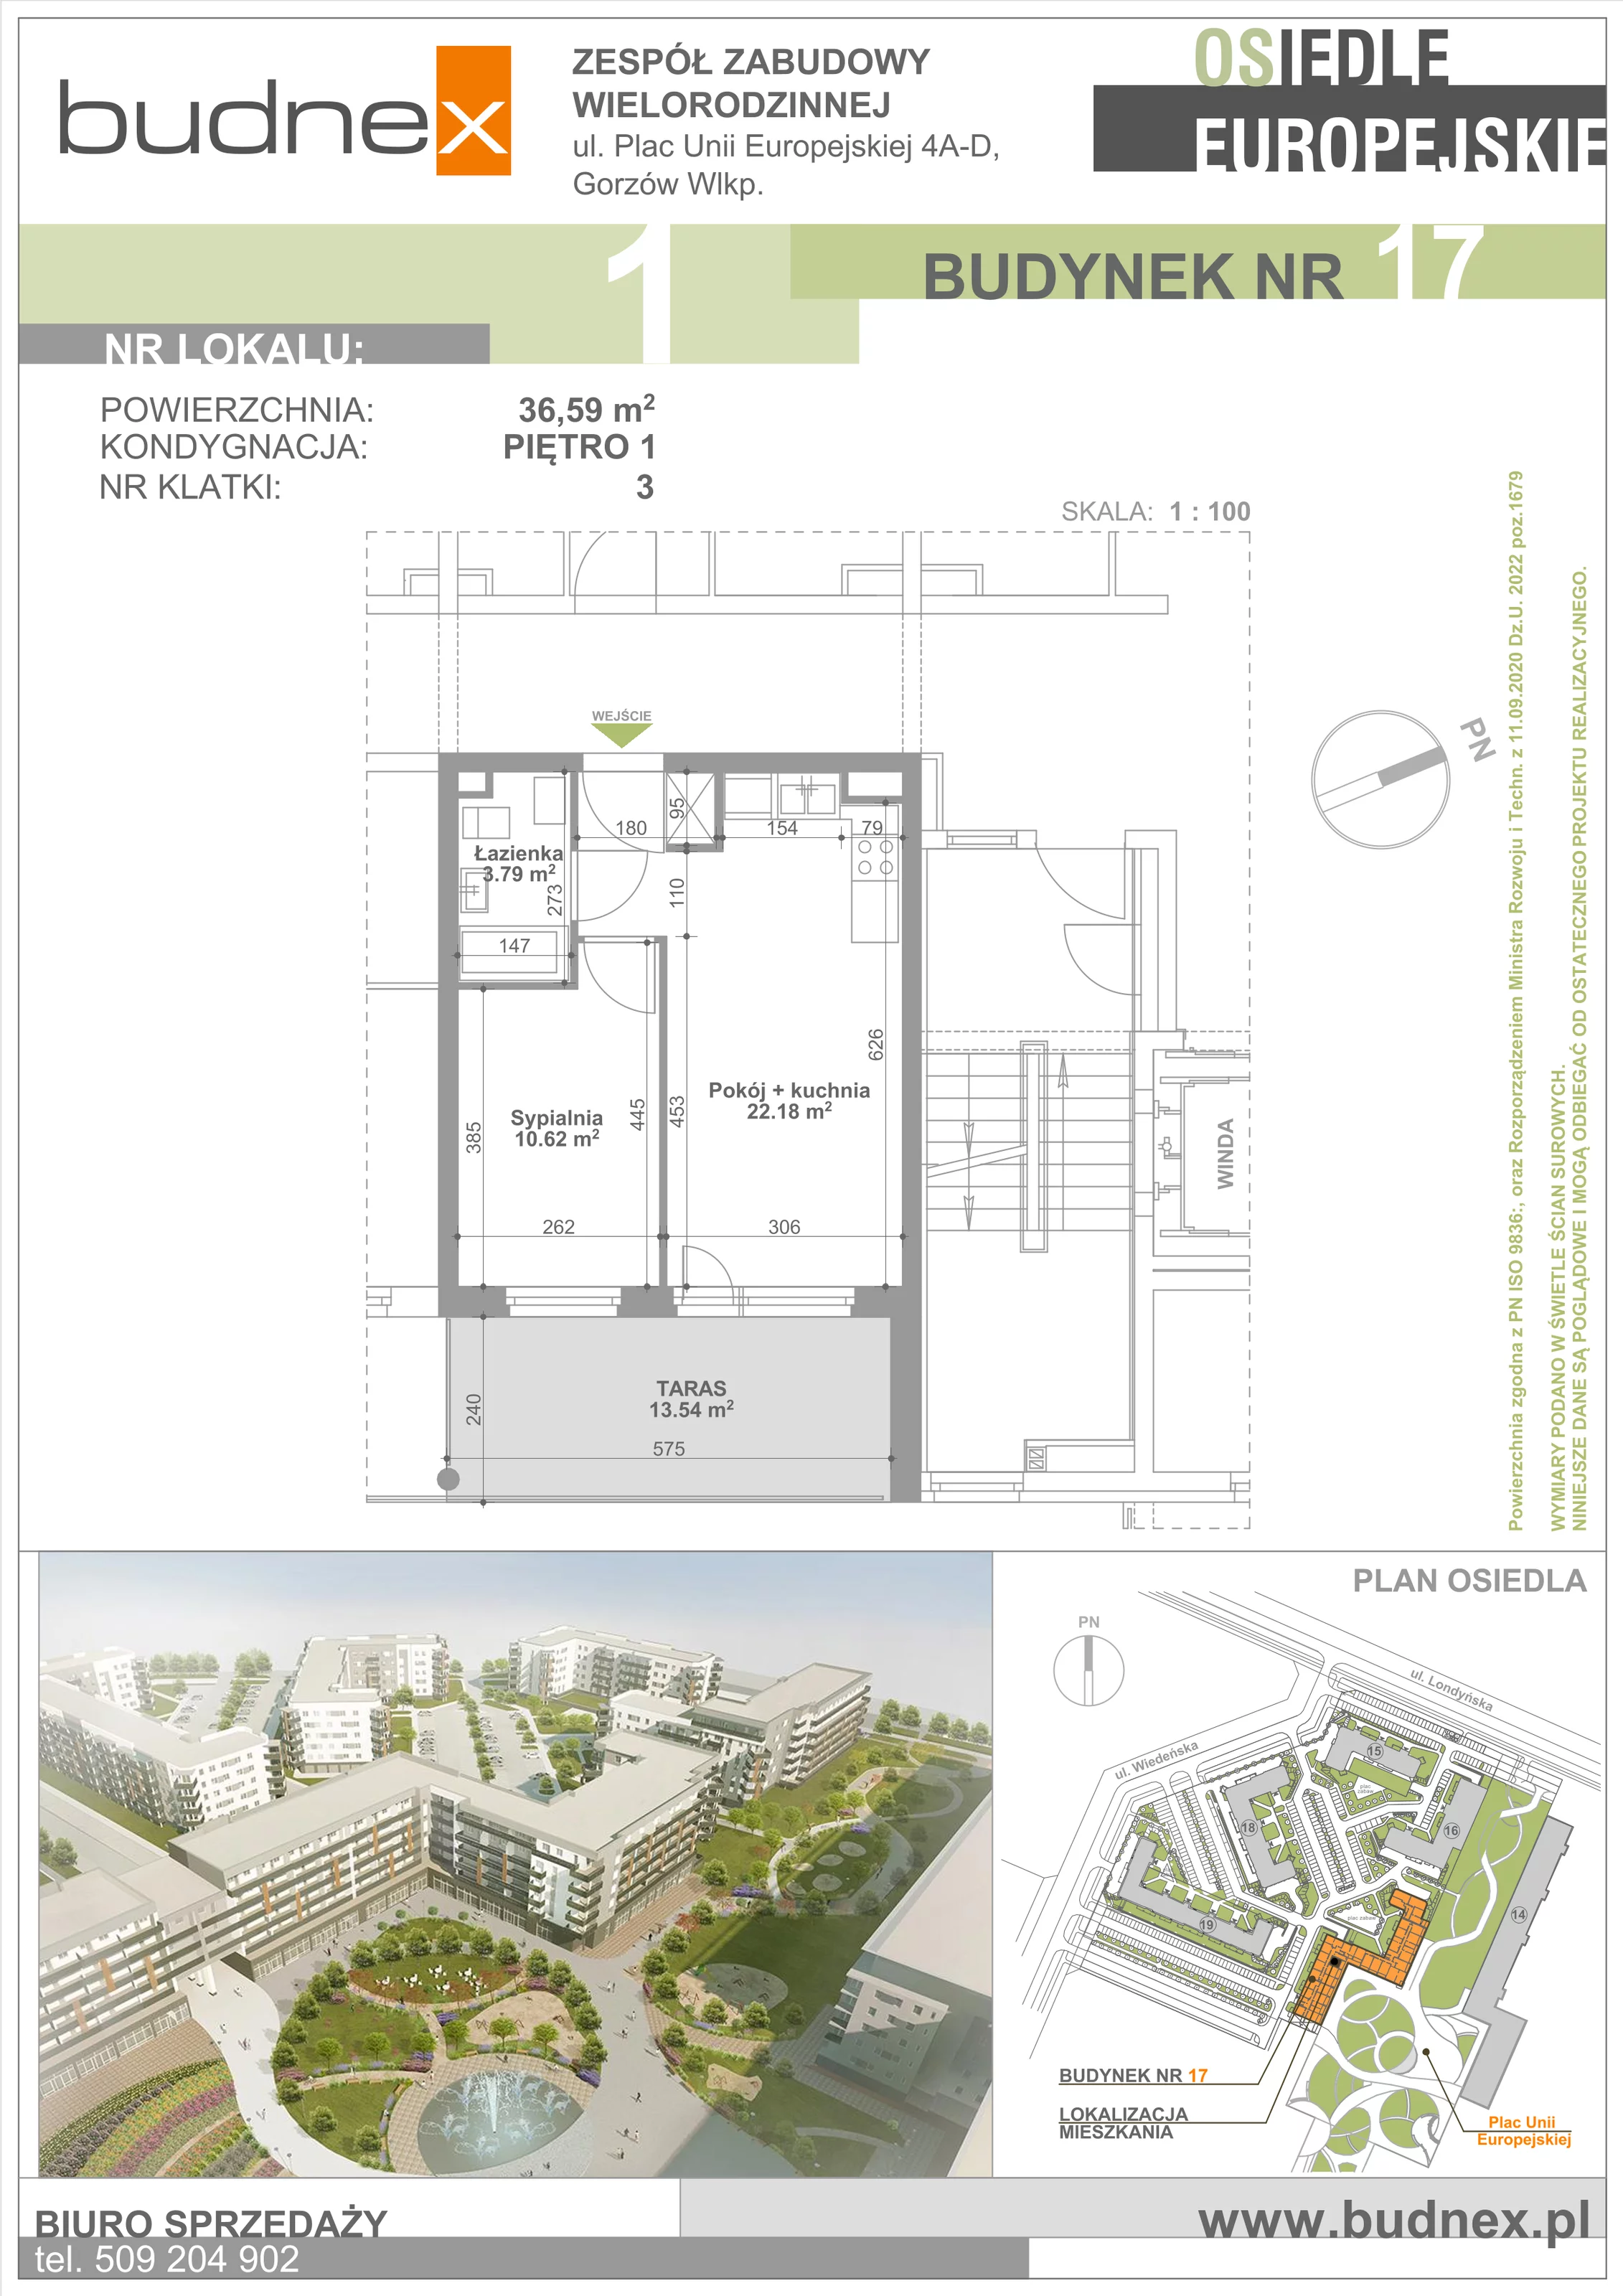 Mieszkanie 36,59 m², piętro 1, oferta nr 3/M1, Osiedle Europejskie - Budynek 17, Gorzów Wielkopolski, Plac Unii Europejskiej 4A-D